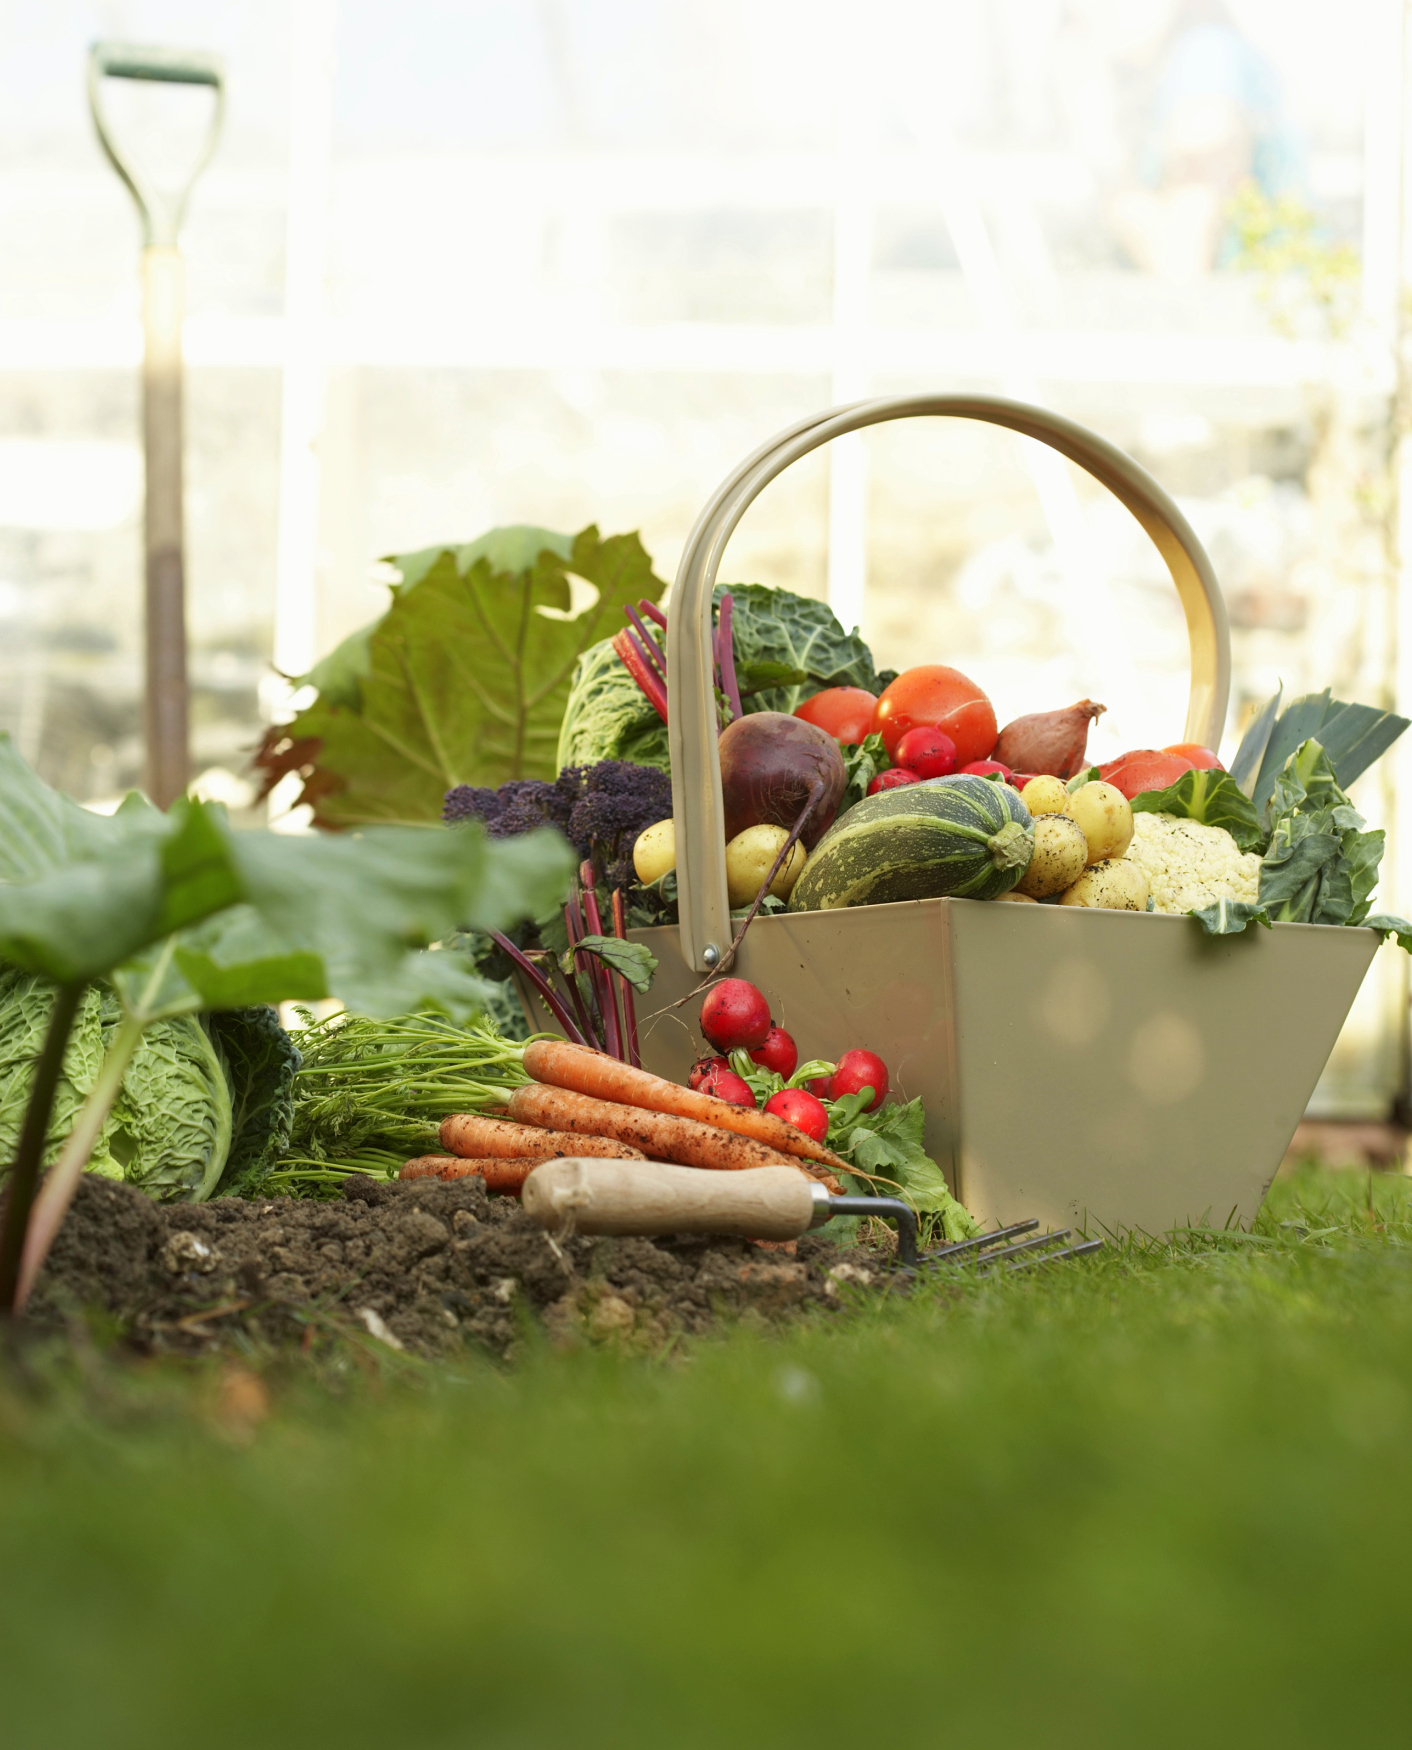 10 Tips For Beginner Gardeners The Old Farmer S Almanac